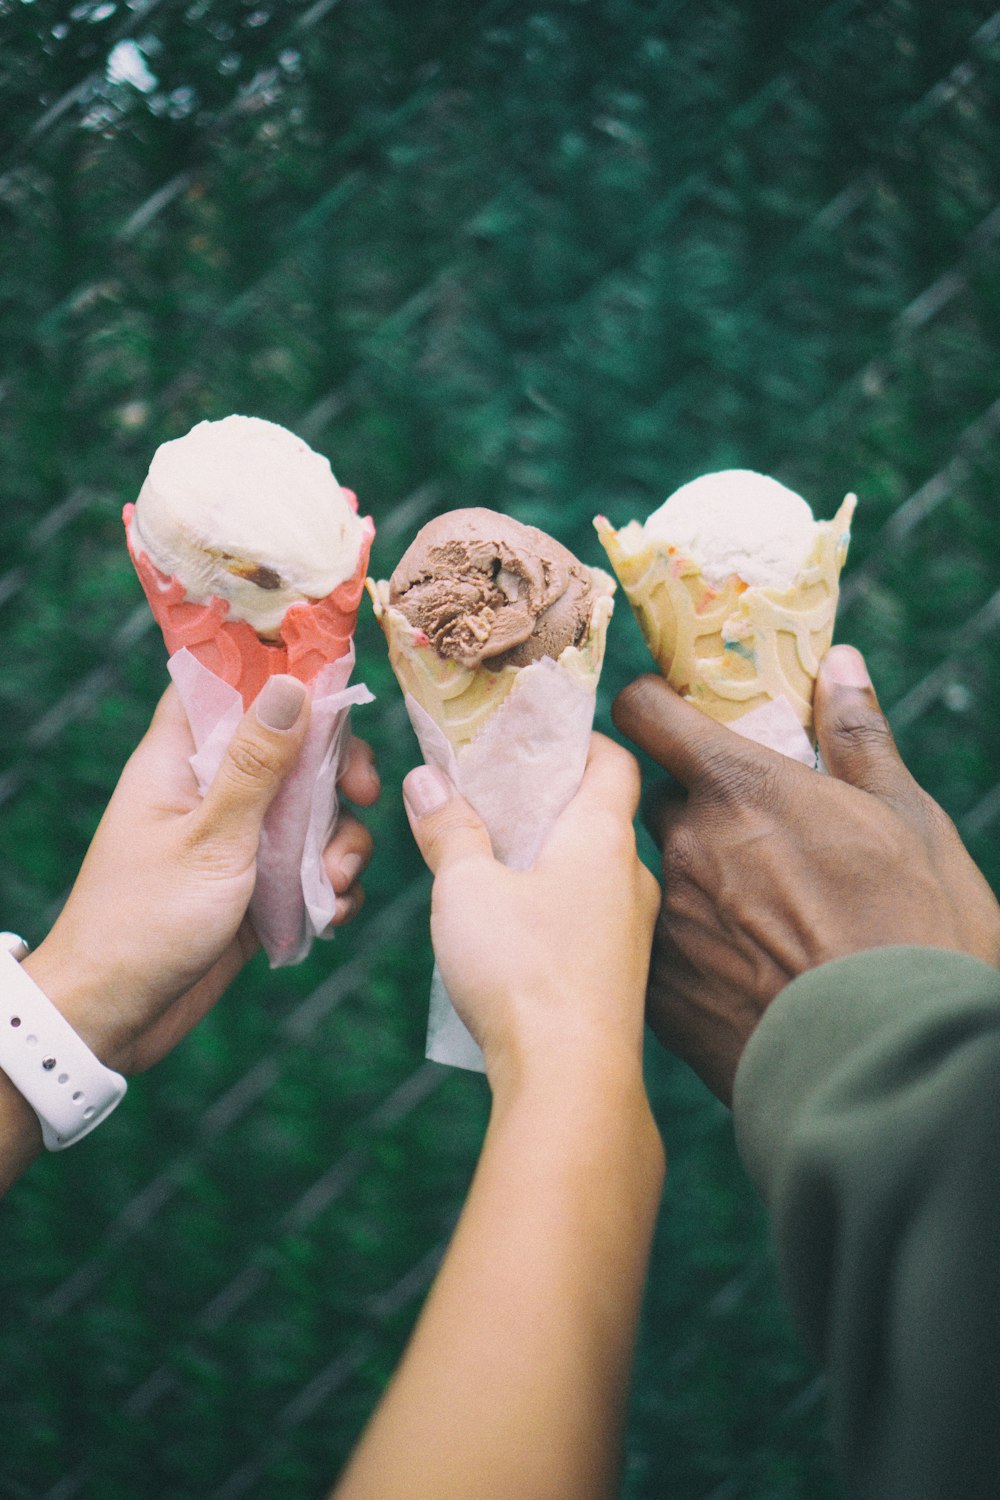 trois personnes tenant des cornets de crème glacée dans leurs mains